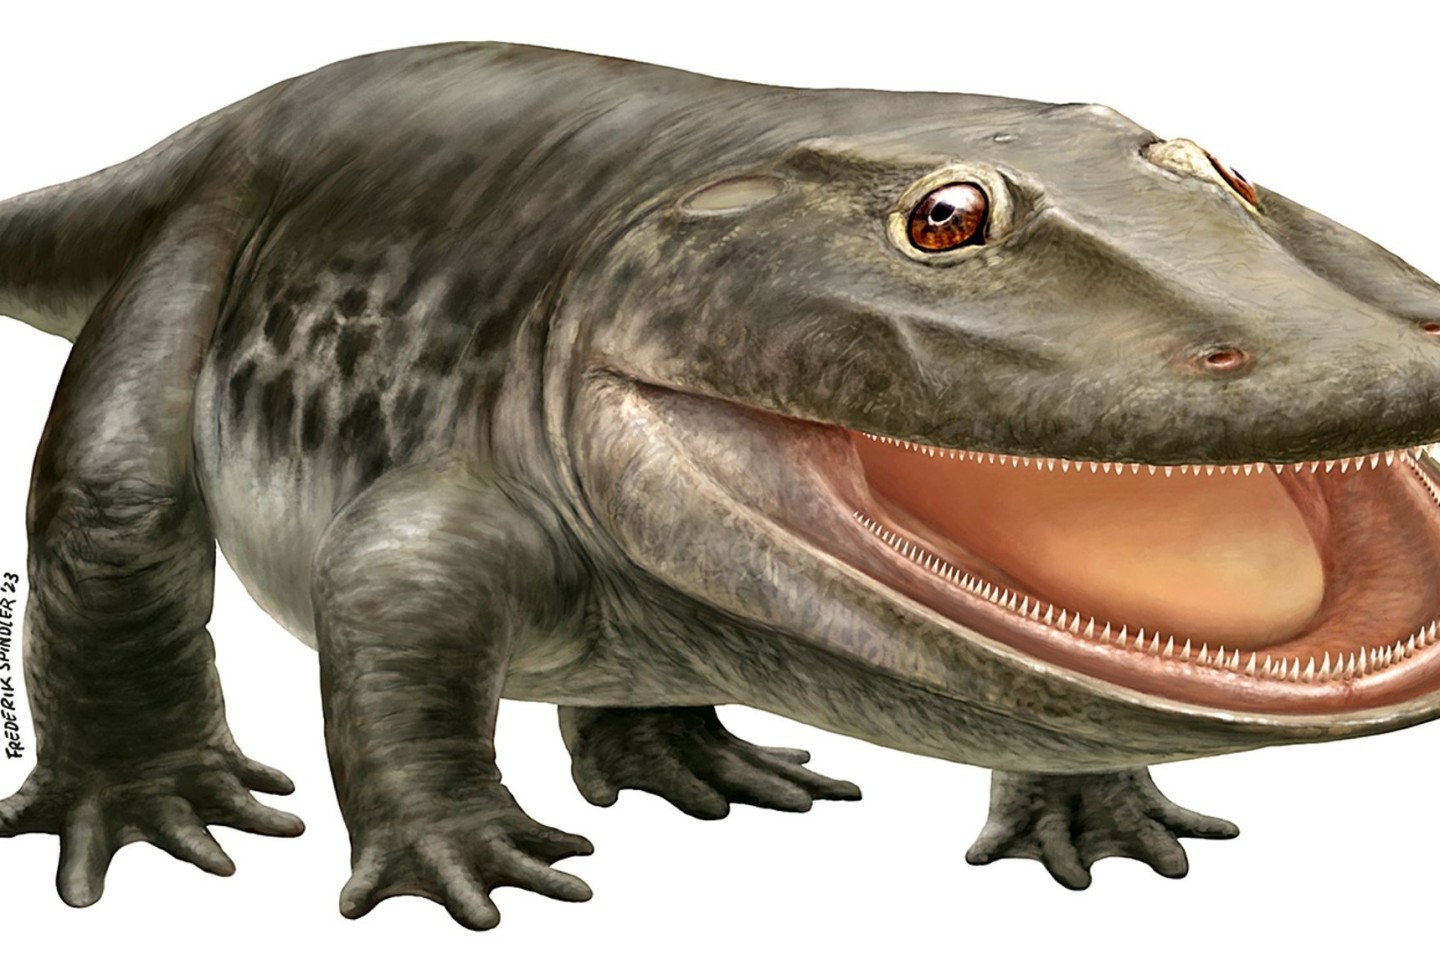 Der Ursaurier mit der Fachbezeichnung Stenokranio boldi. Der Name bedeutet laut Museum in etwa: Schmalschädler.